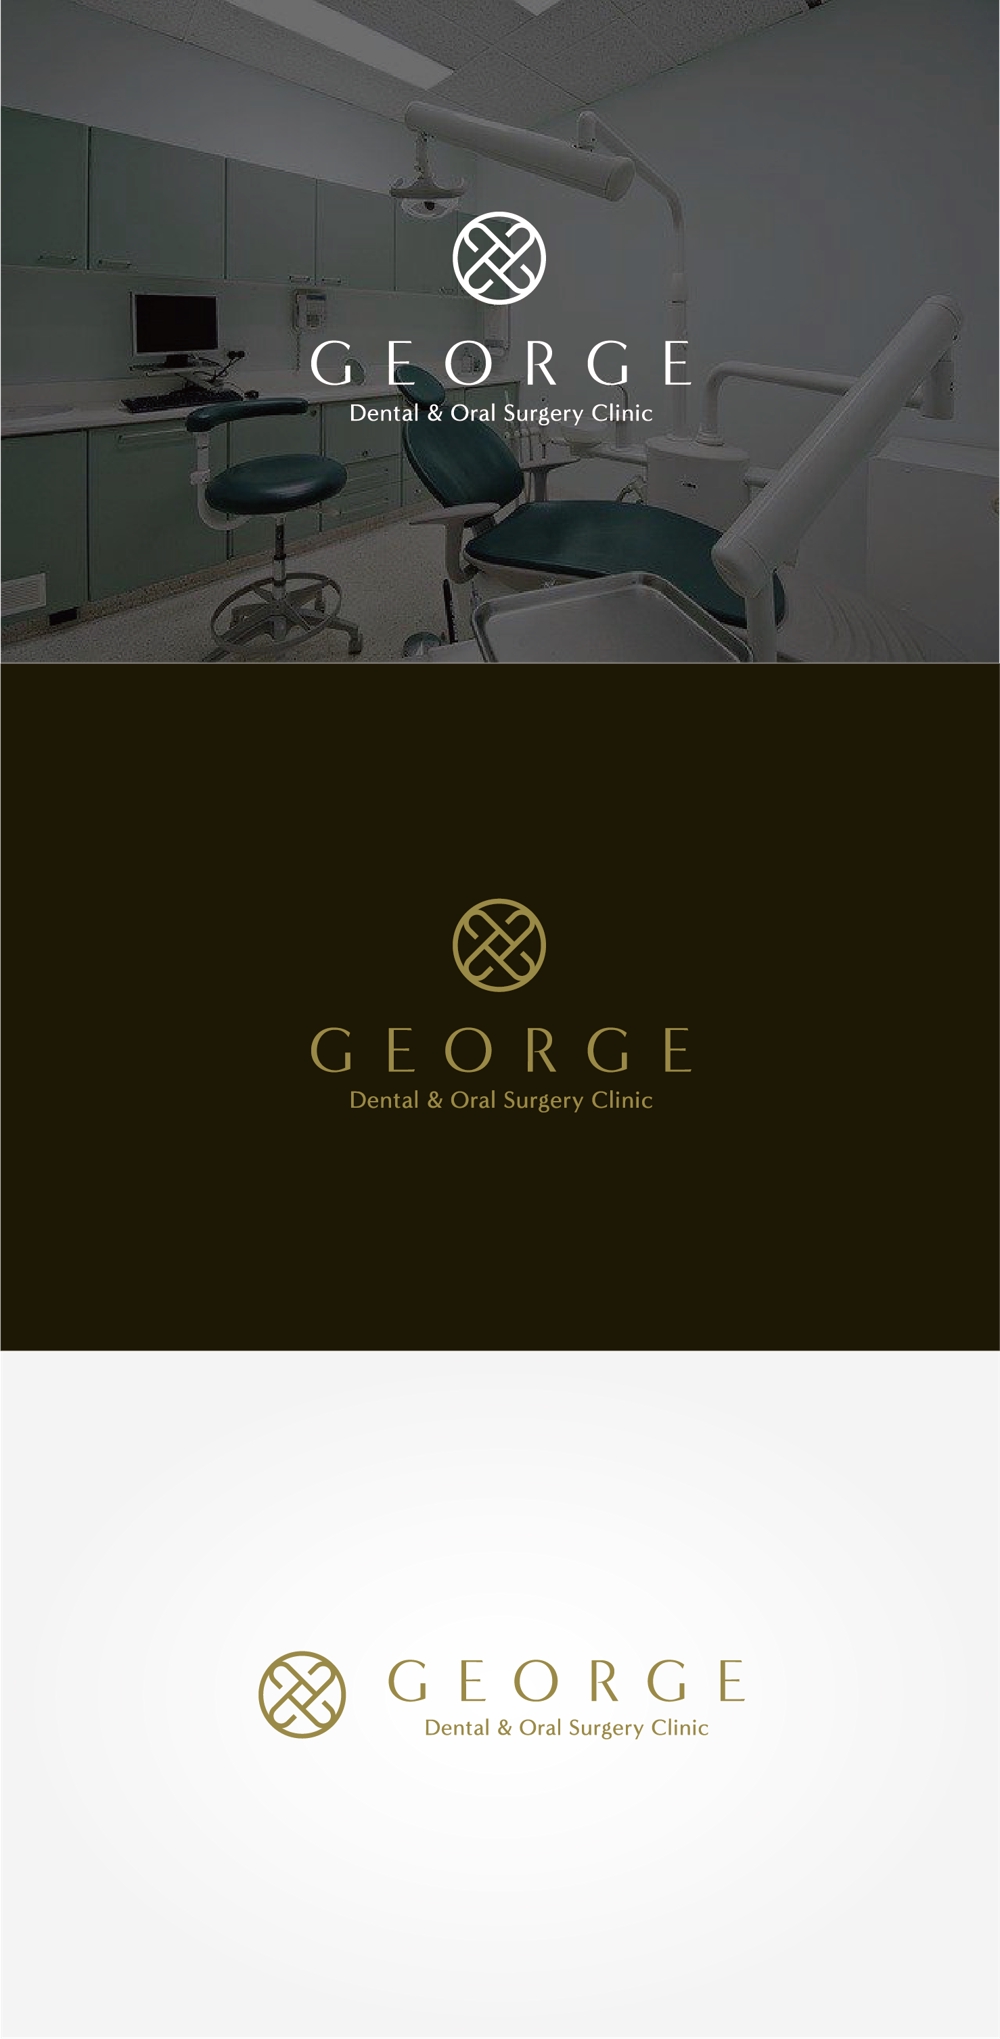 歯科口腔外科クリニック「ジョージ歯科口腔外科」のロゴ